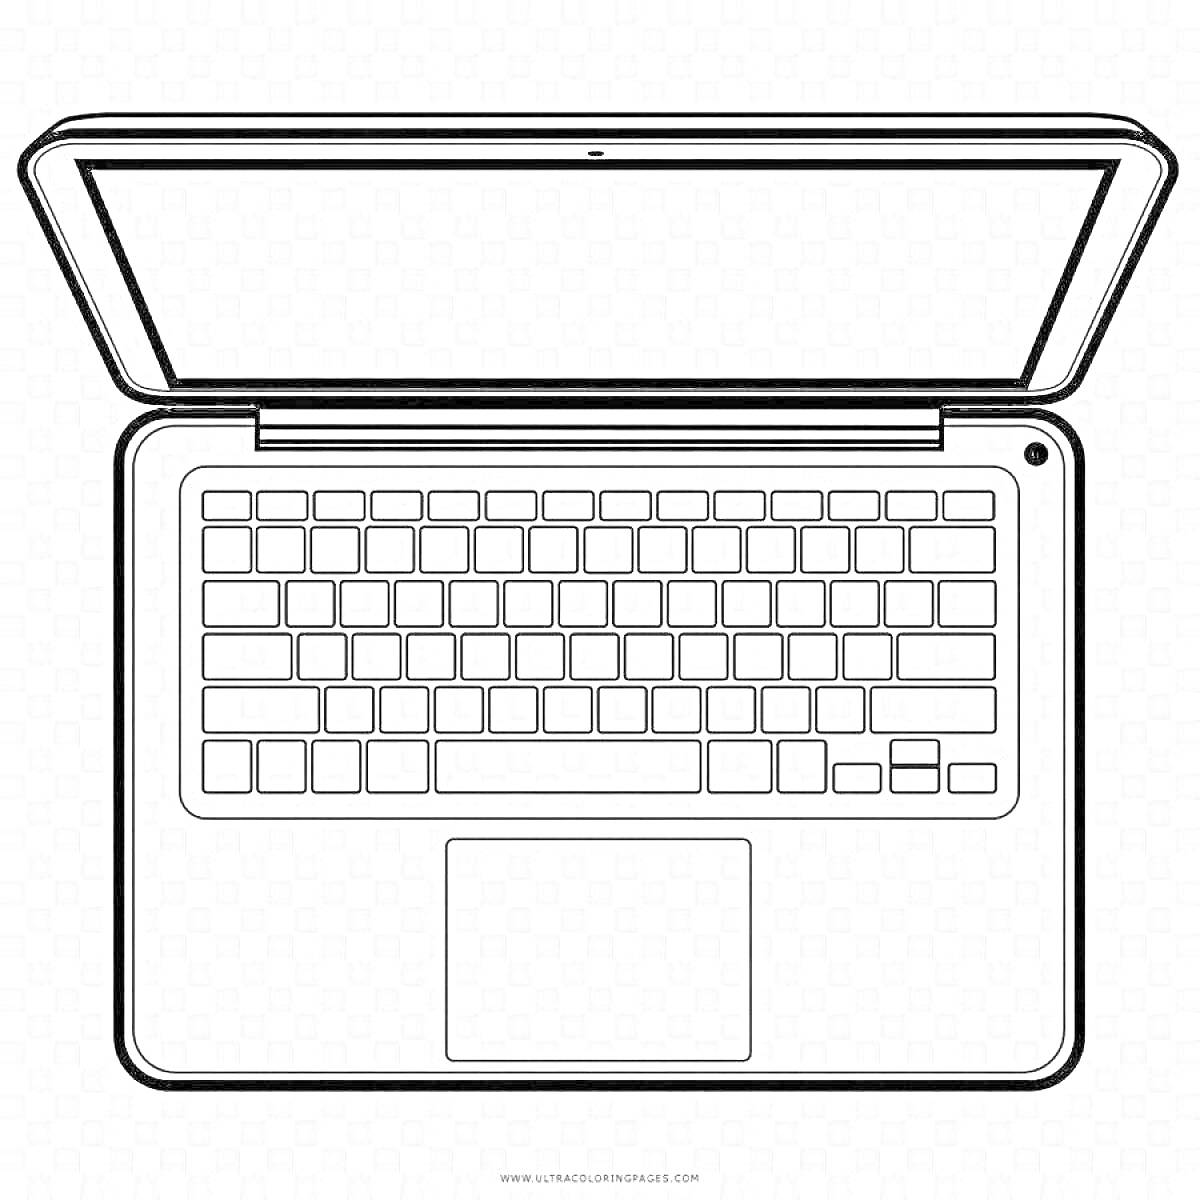 Раскраска с изображением клавиатуры ноутбука, экрана и тачпада